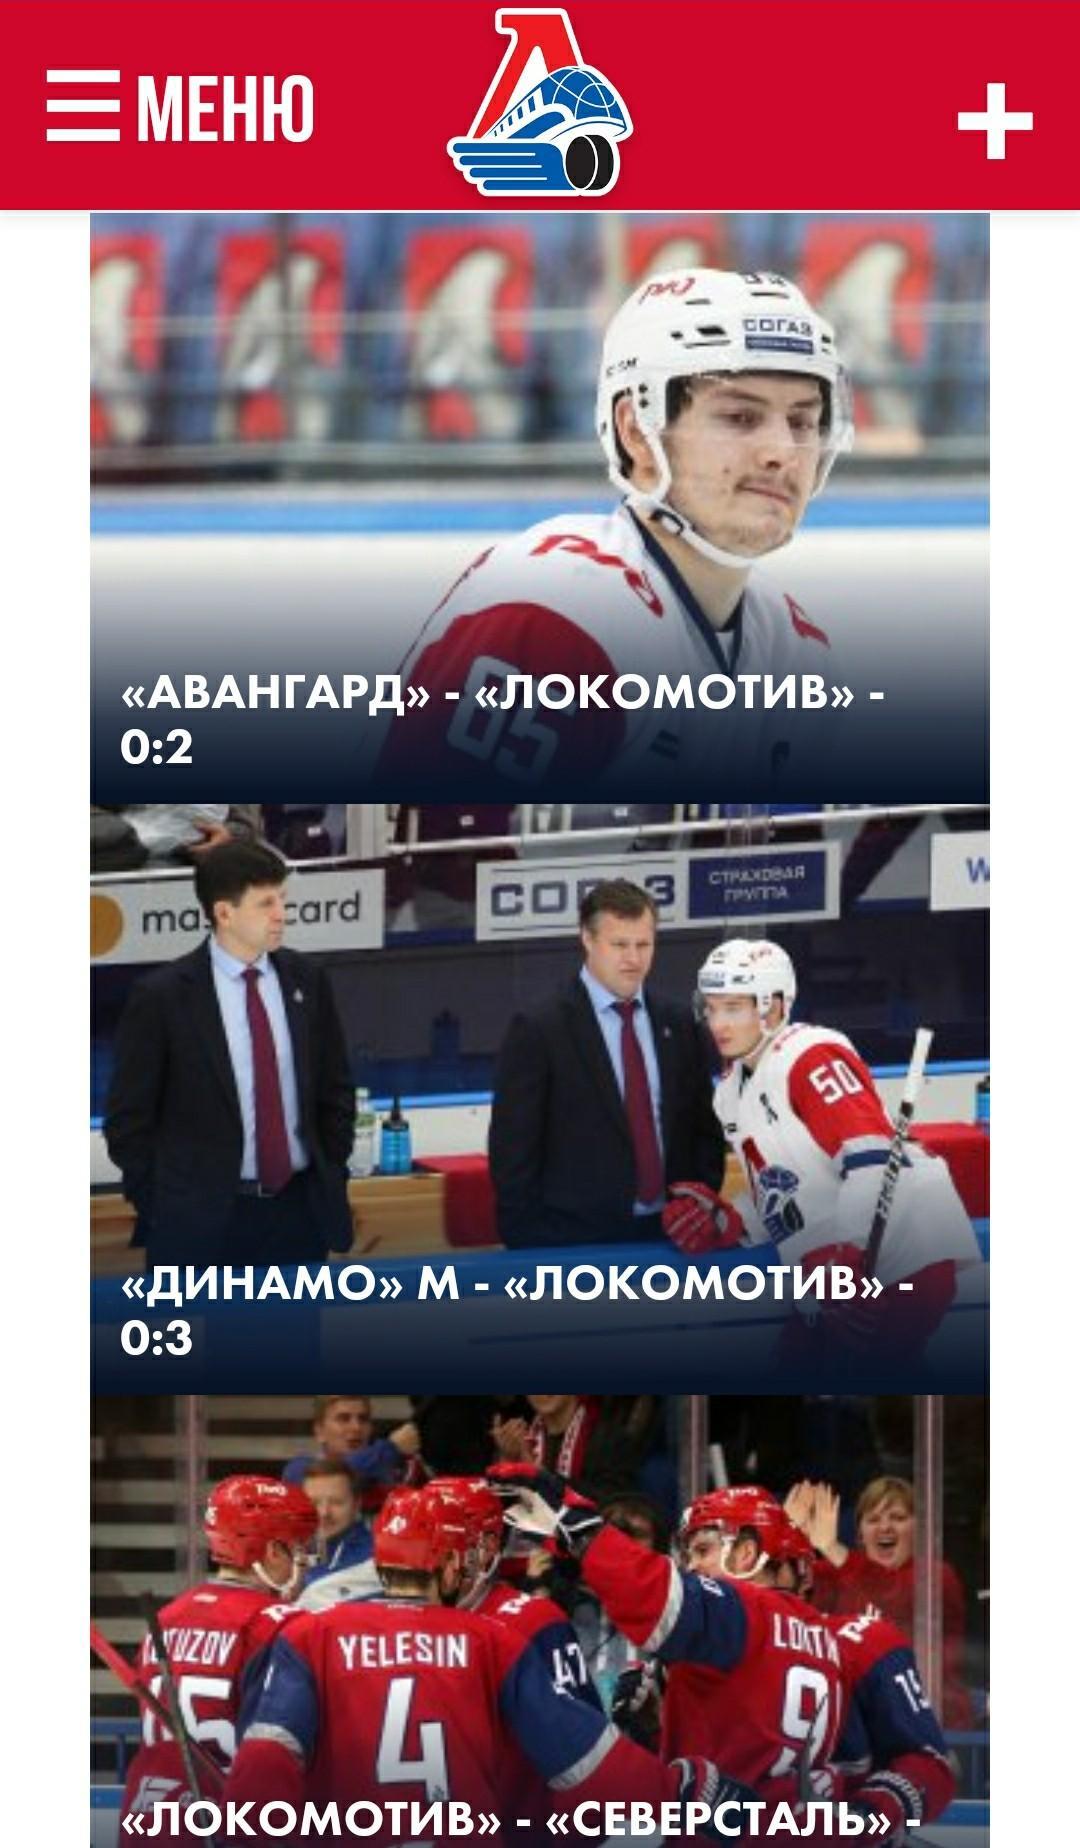 Ярославль хоккей расписание матчей